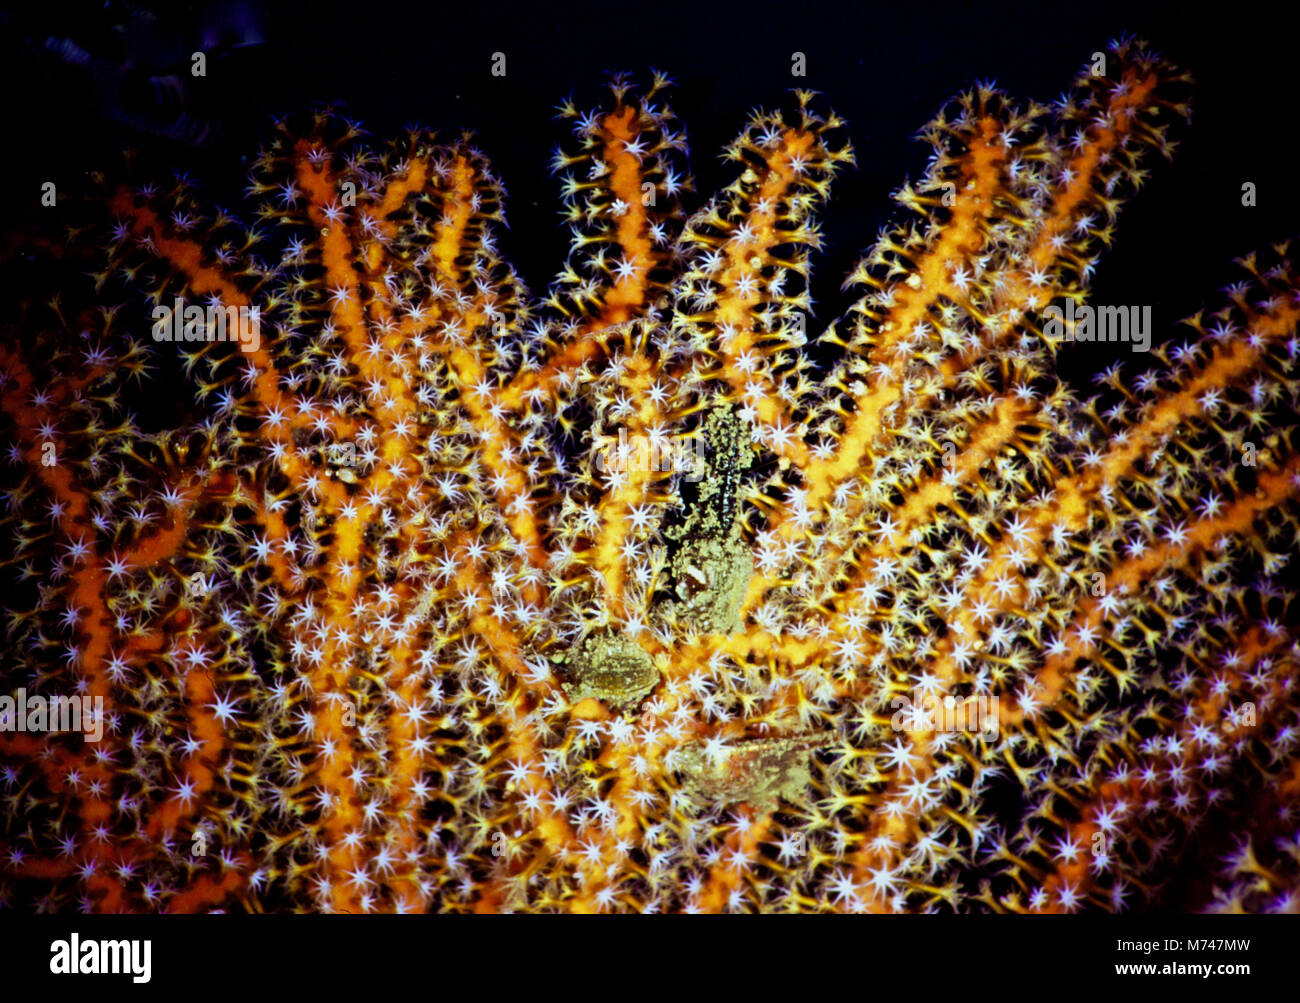 Un de gorgones gorgones (Acabaria splendens), avec ses nombreux polypes huit-tentacled étendu aux micro-passage de capture du plancton. Ces colonies de minuscules animaux délicats, vivant dans leur commune aux couleurs vives des squelettes, servent à illustrer la fragilité et la beauté de régions tropicales et les récifs coralliens tropicaux. Malheureusement, ces récifs sont en train de mourir ; plus d'un quart ont été réduits en ruines au cours des vingt dernières années. Cette tendance se poursuit. Ils sont les plus vulnérables de nos écosystèmes, comme ils ont très peu de capacités à s'adapter à la hausse des températures et l'acidification. La Mer Rouge égyptienne. Banque D'Images